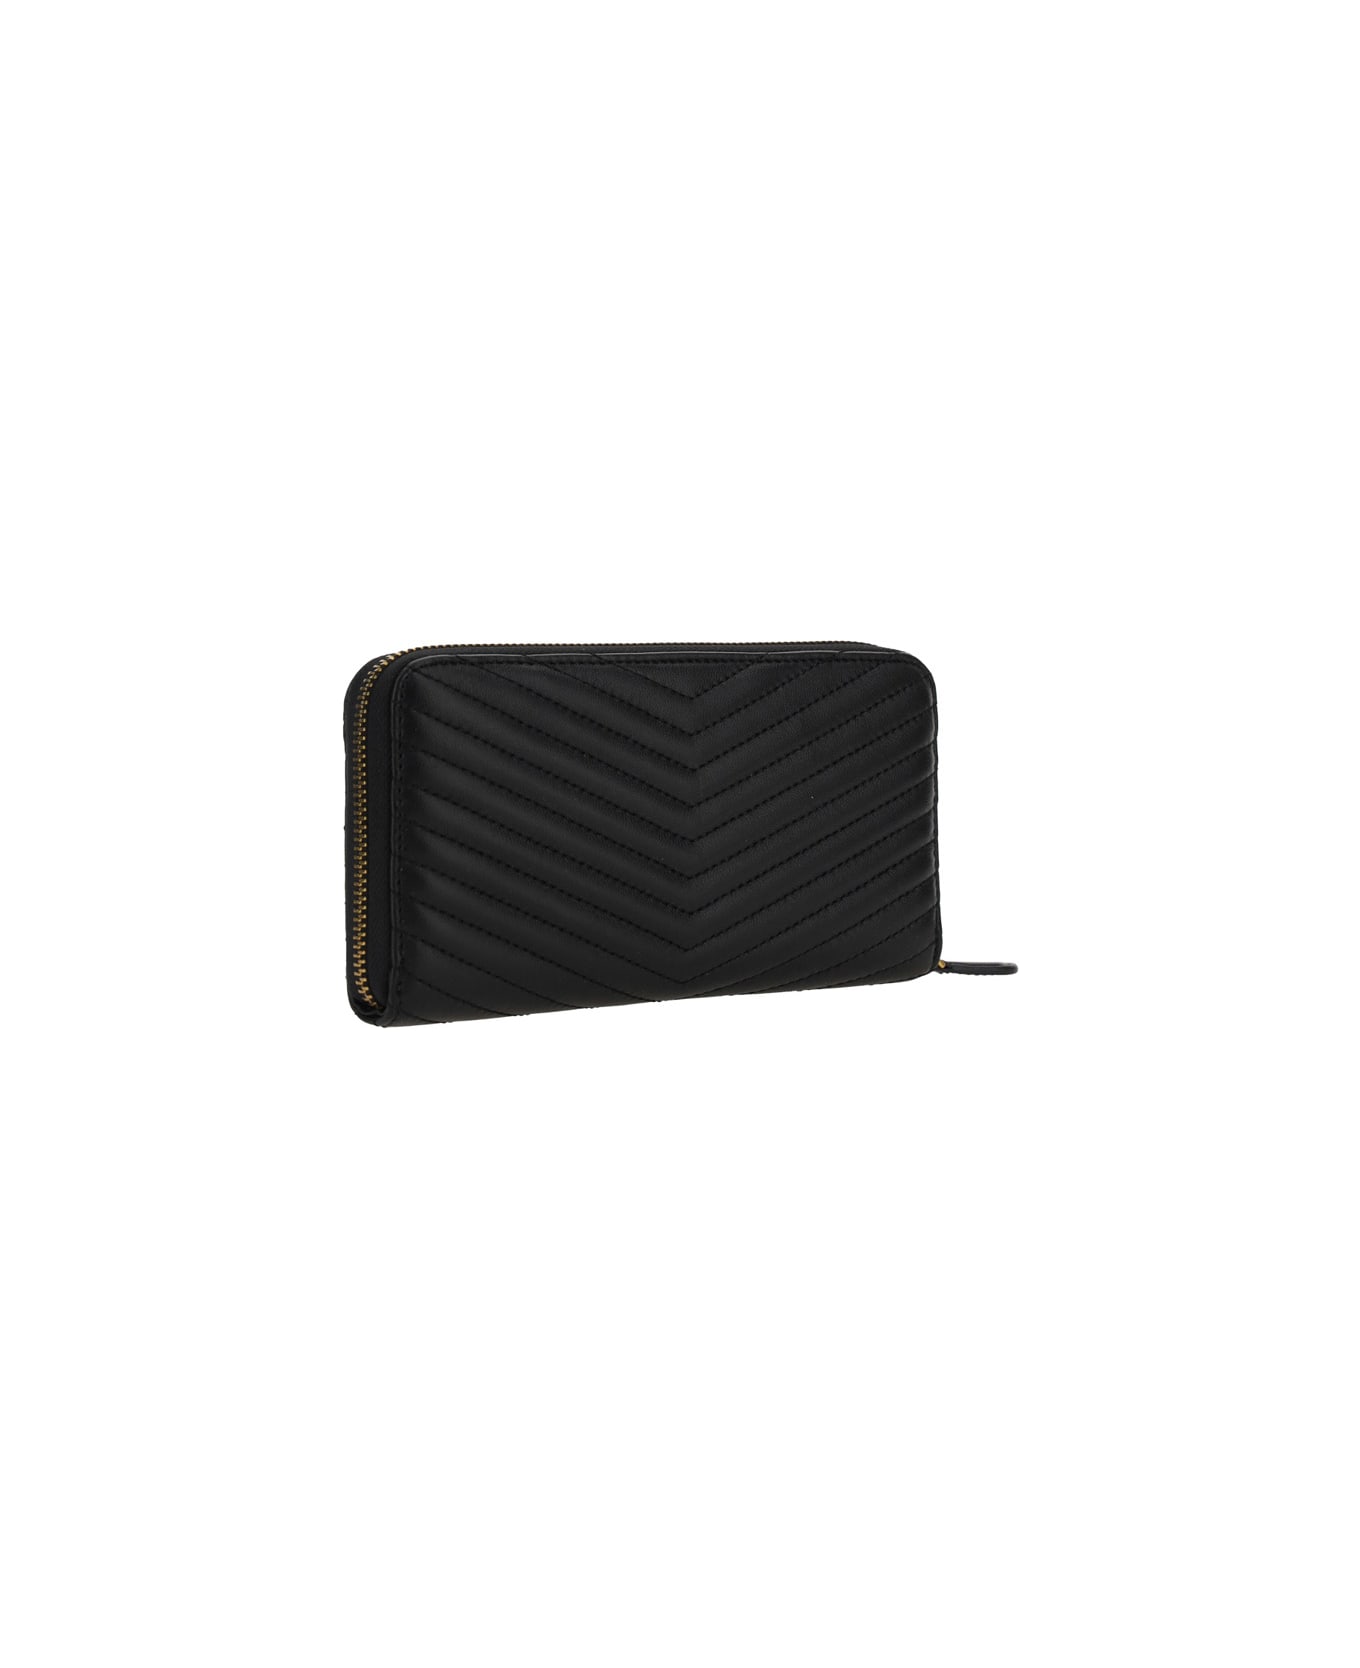 Pinko Ryder Leather Zip Around Wallet - NERO  ANTIQUE GOLD 財布